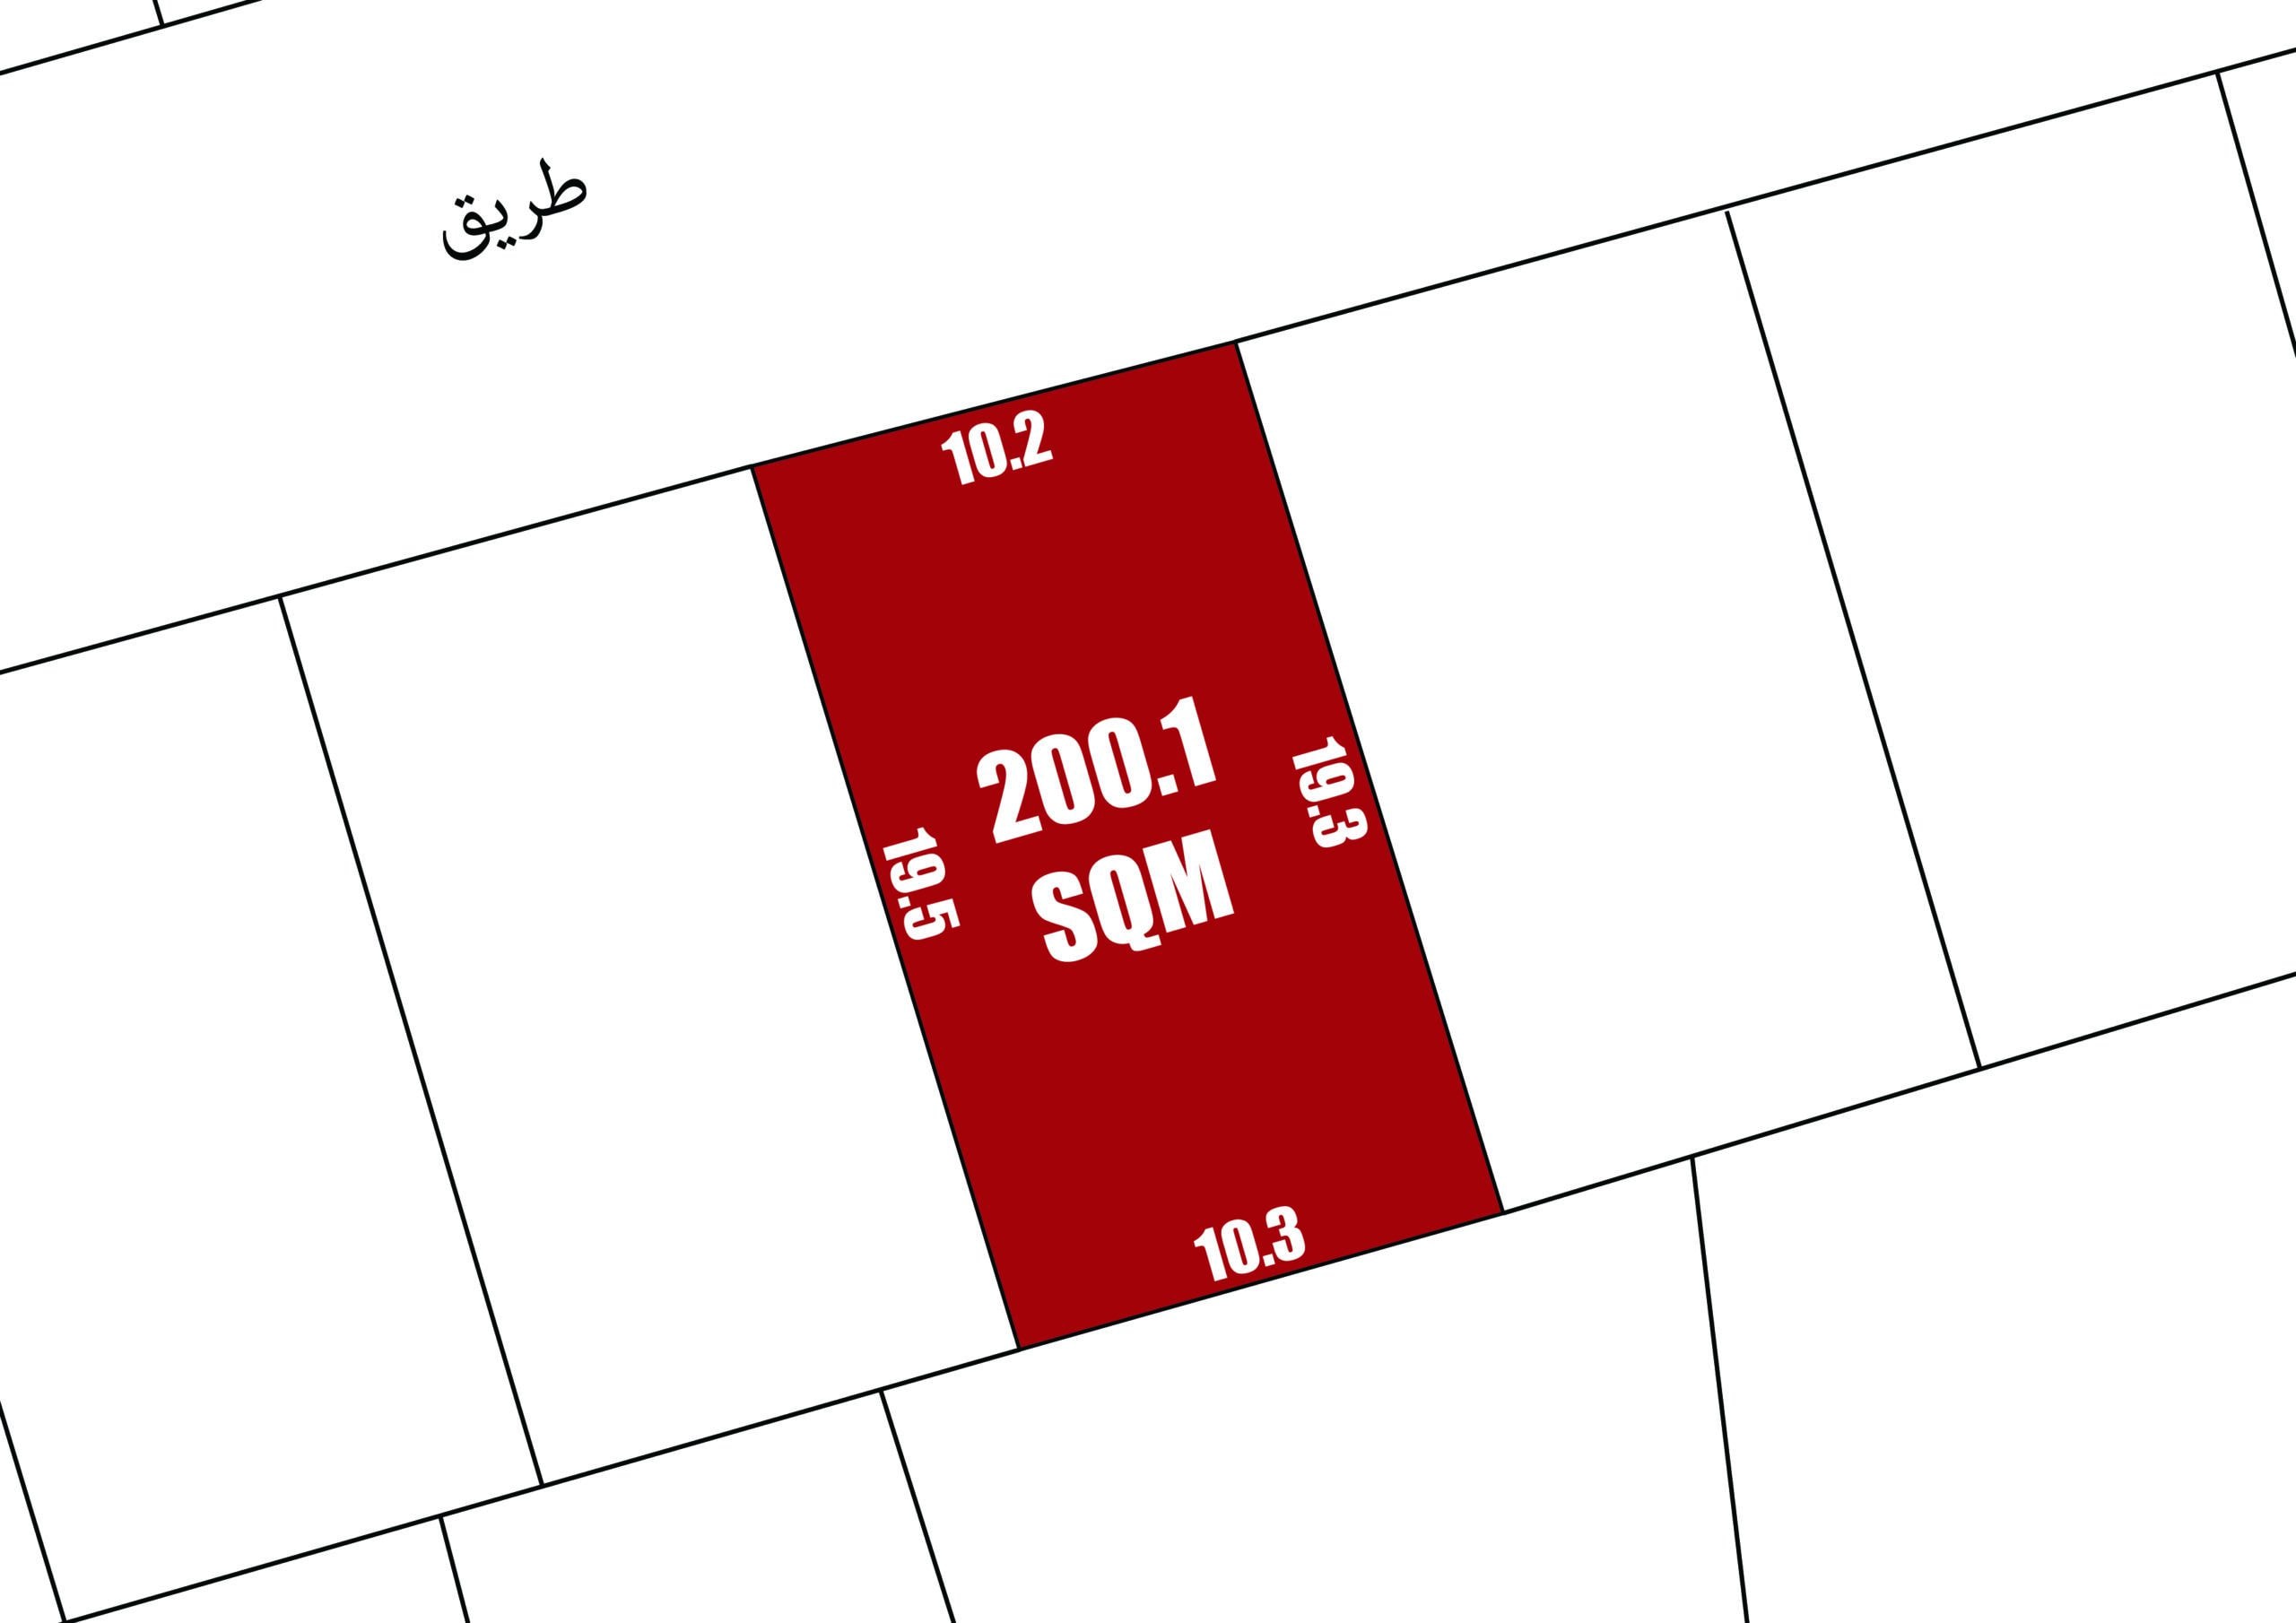 رسم تخطيطي لقطعة أرض حمراء مكتوب عليها "200.1 متر مربع" محاطة بقطع أرض بيضاء، مع قياسات من كل جانب، تشير إلى مخطط عقاري بأبعاده.